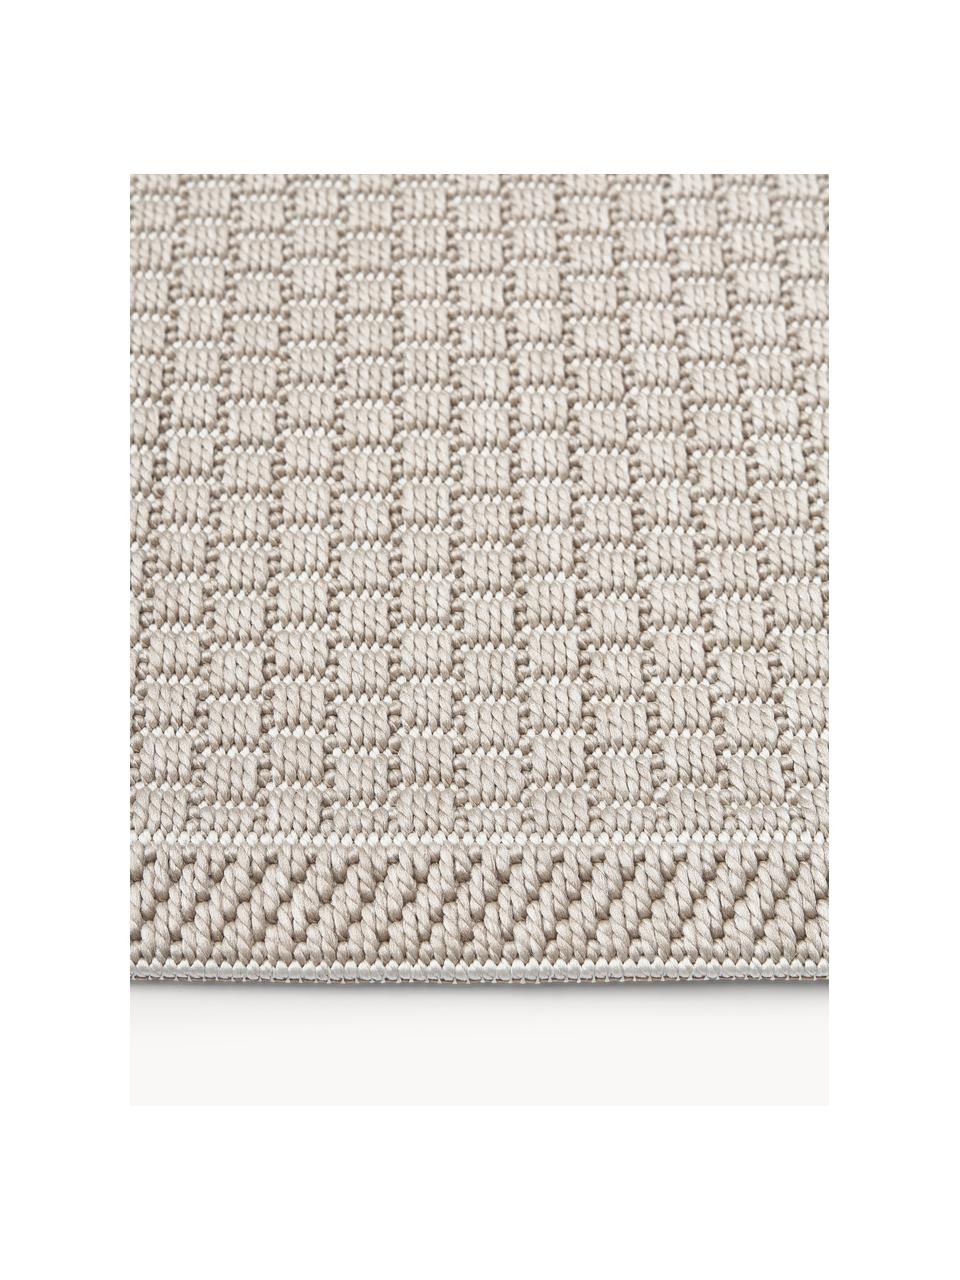 Kulatý interiérový a exteriérový koberec Toronto, 100 % polypropylen, Béžová, Ø 120 cm (velikost S)